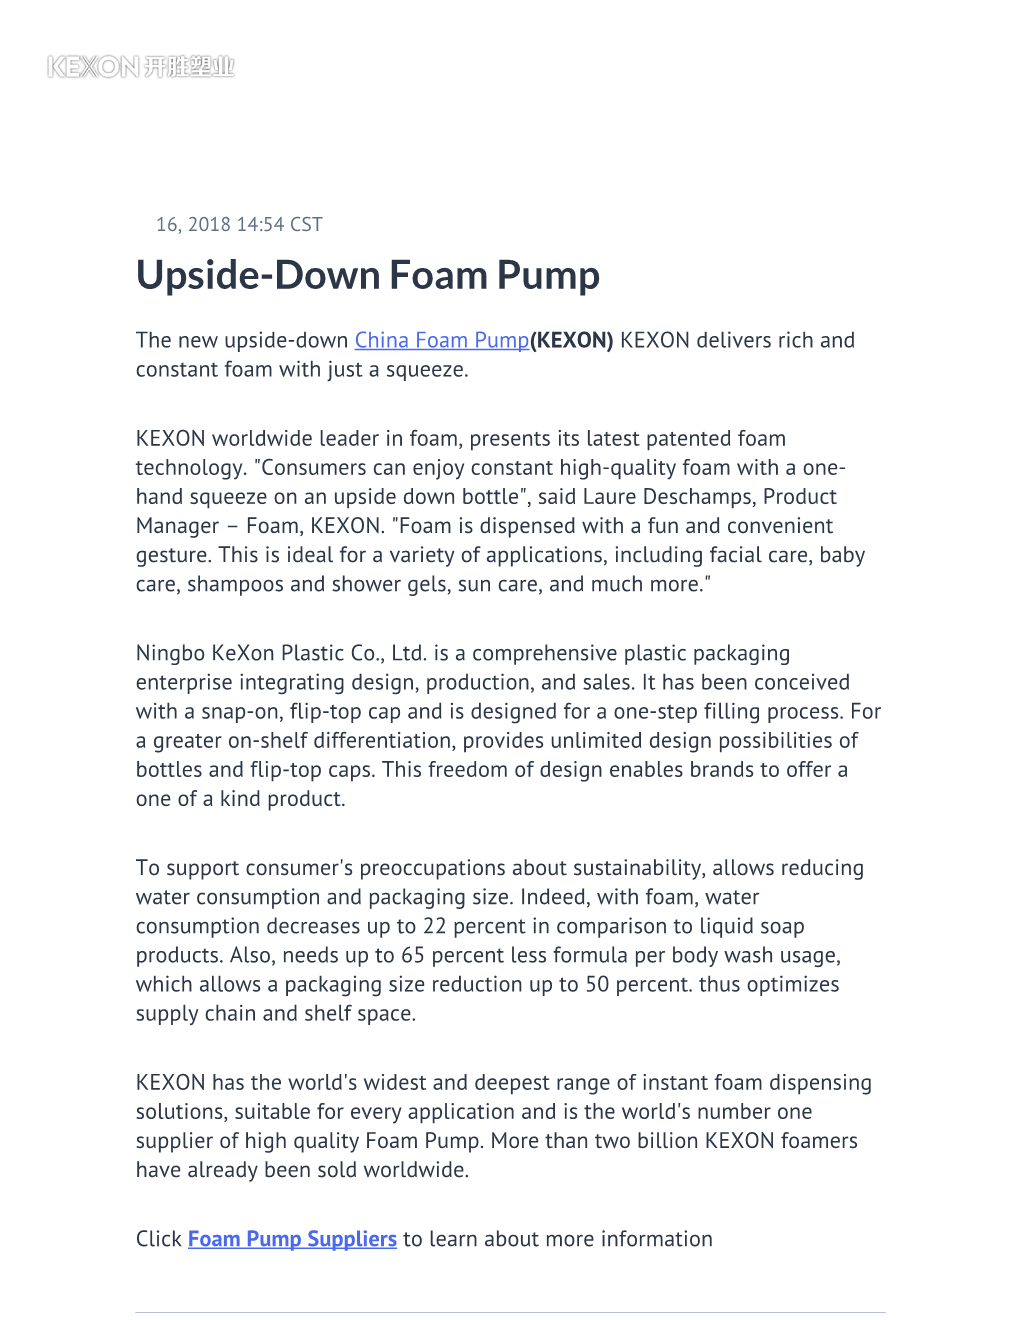 Upside-Down Foam Pump